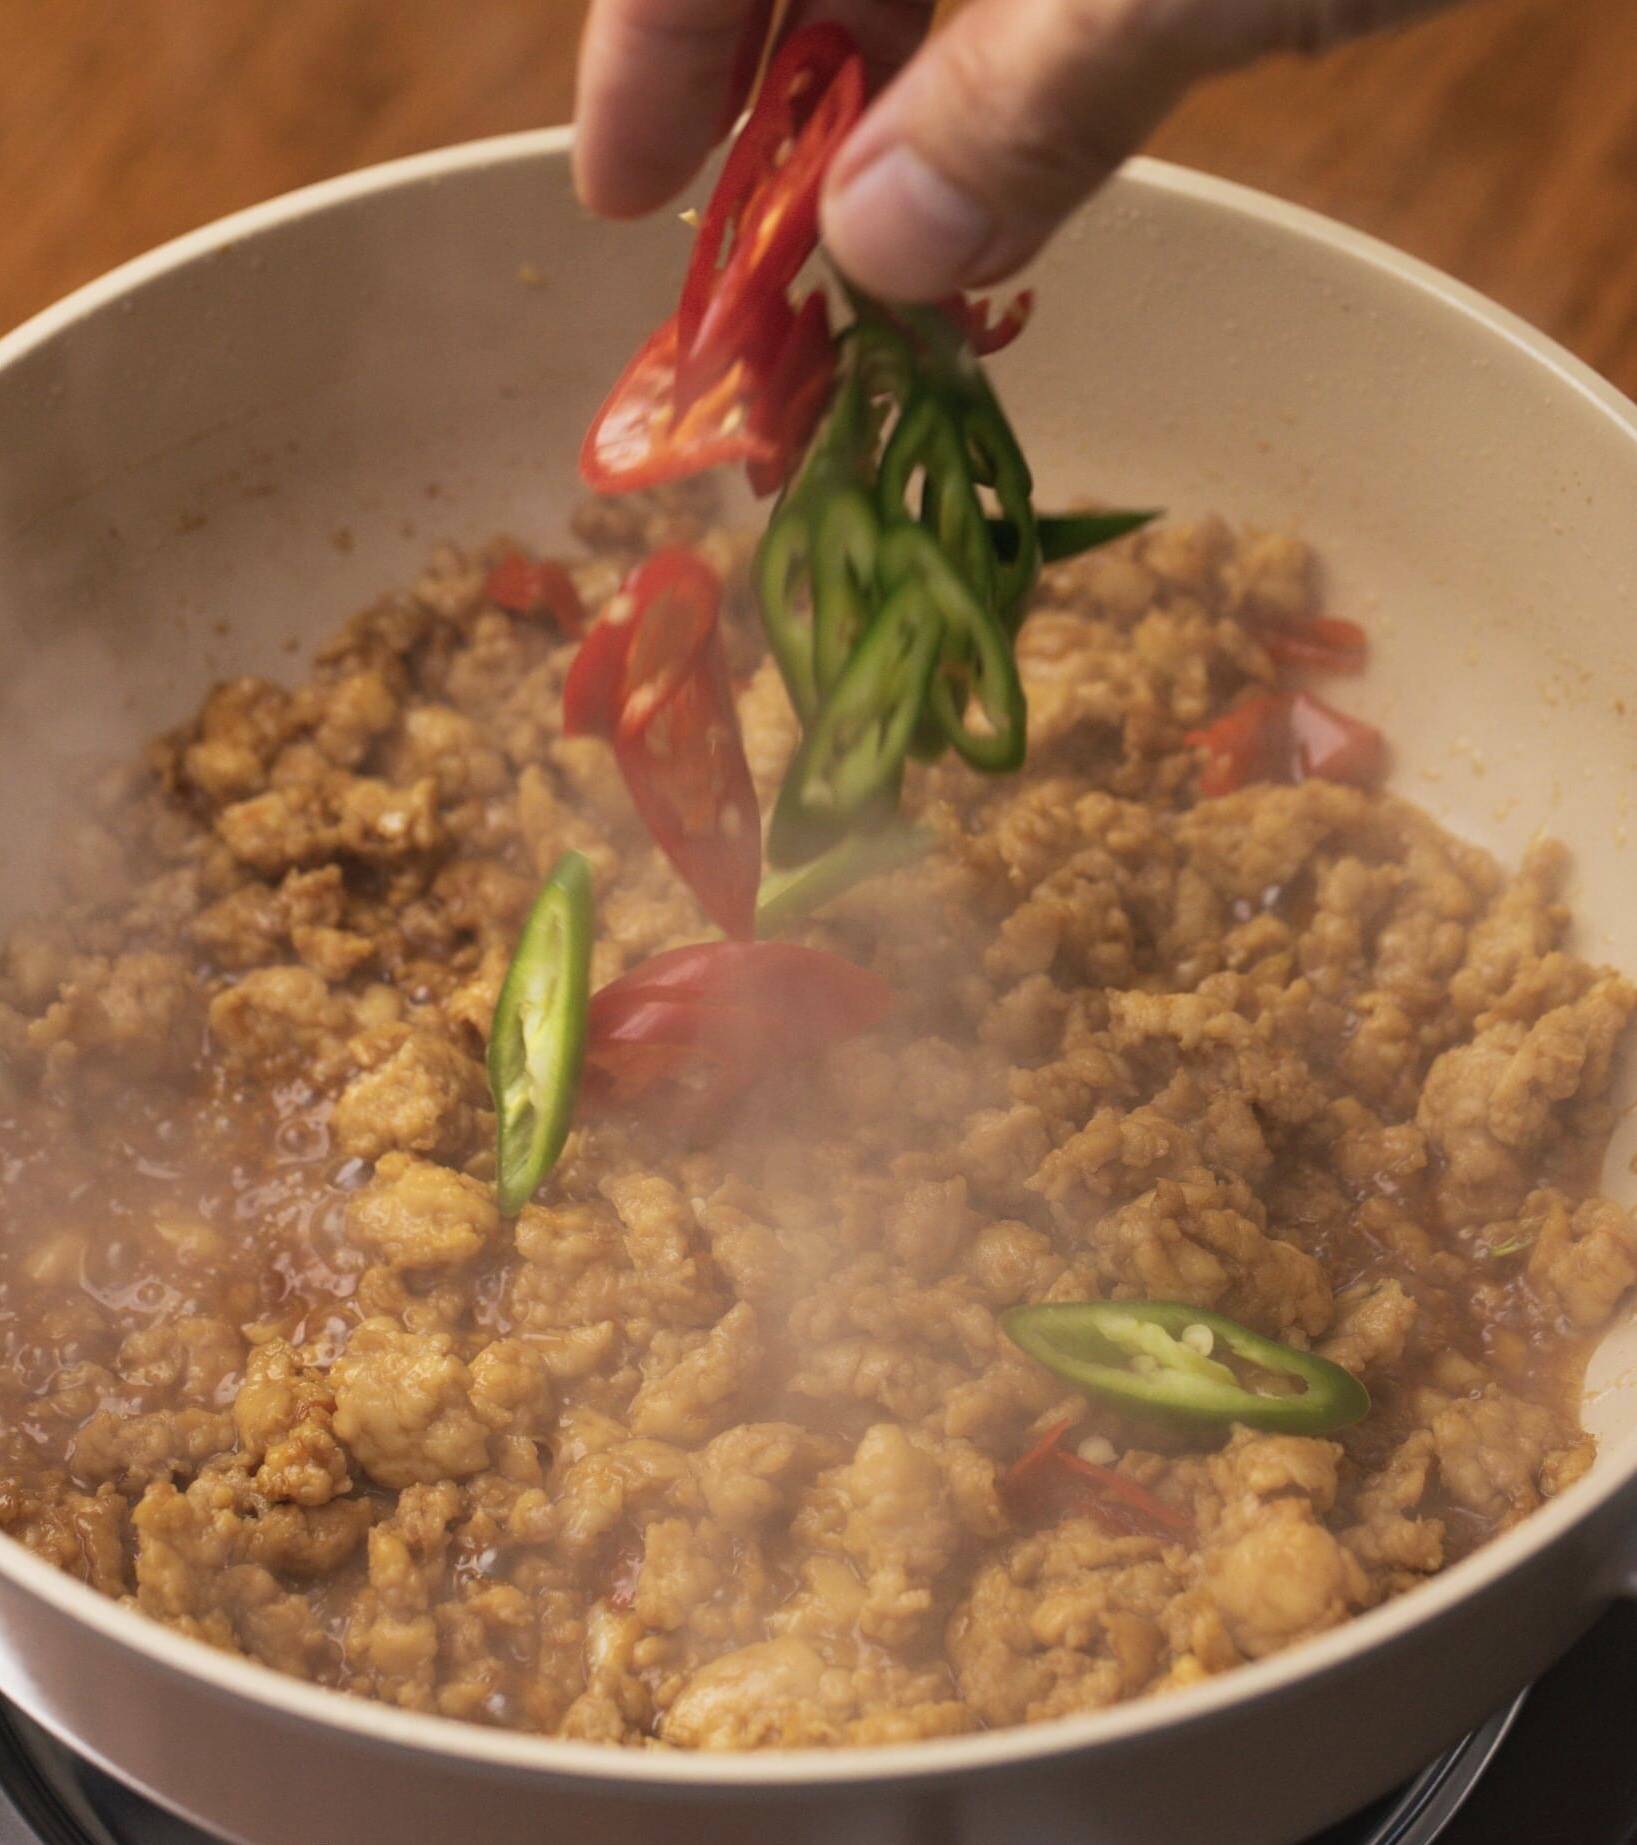 蘿勒葉炒肉碎食譜、做法 | 文迪私人廚房 Mandy's Kitchen的Cook1Cook食譜分享